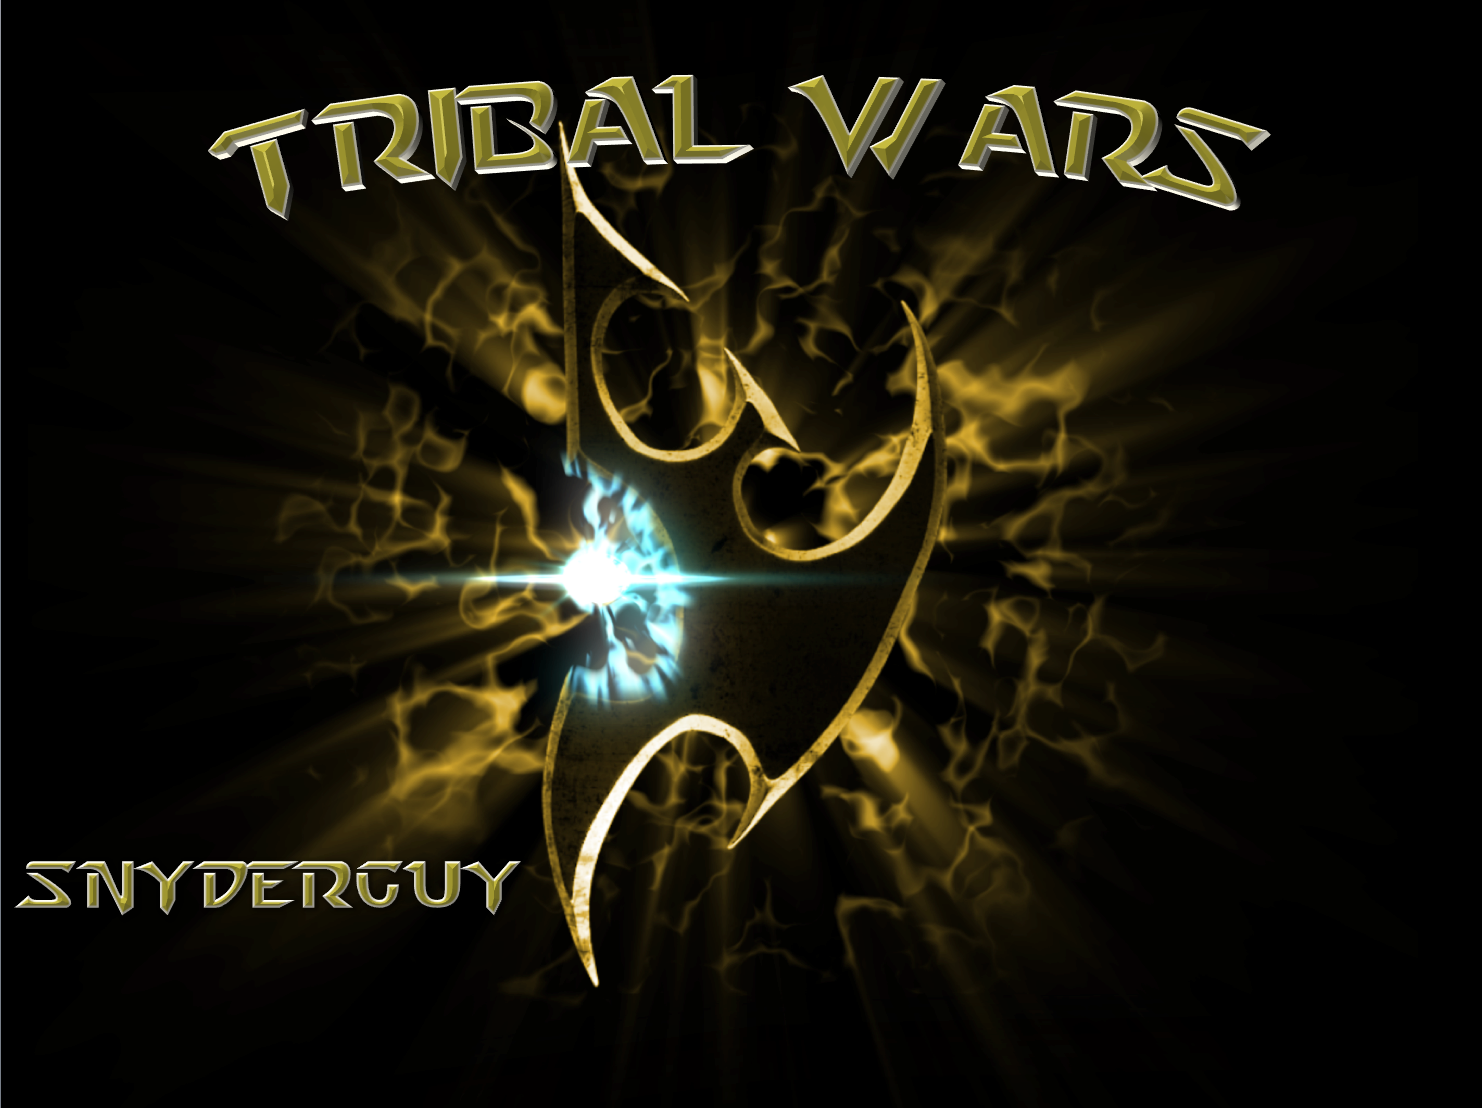 Tribal Wars project avatar